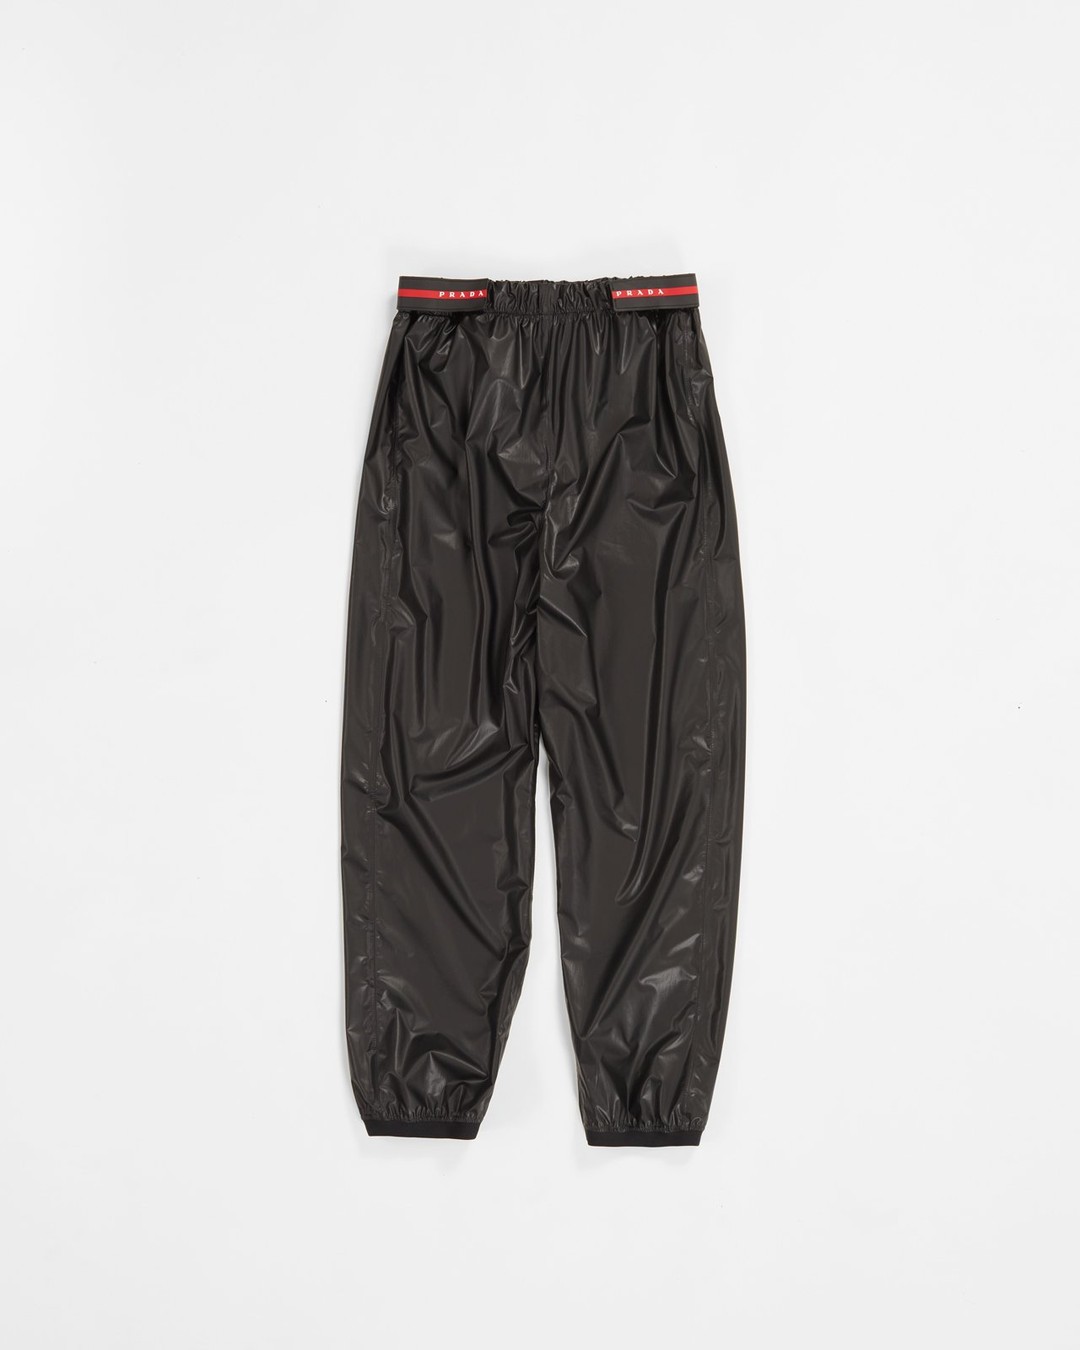 Prada – Men's Shiny Nylon Track Pants | Highsnobiety Shop